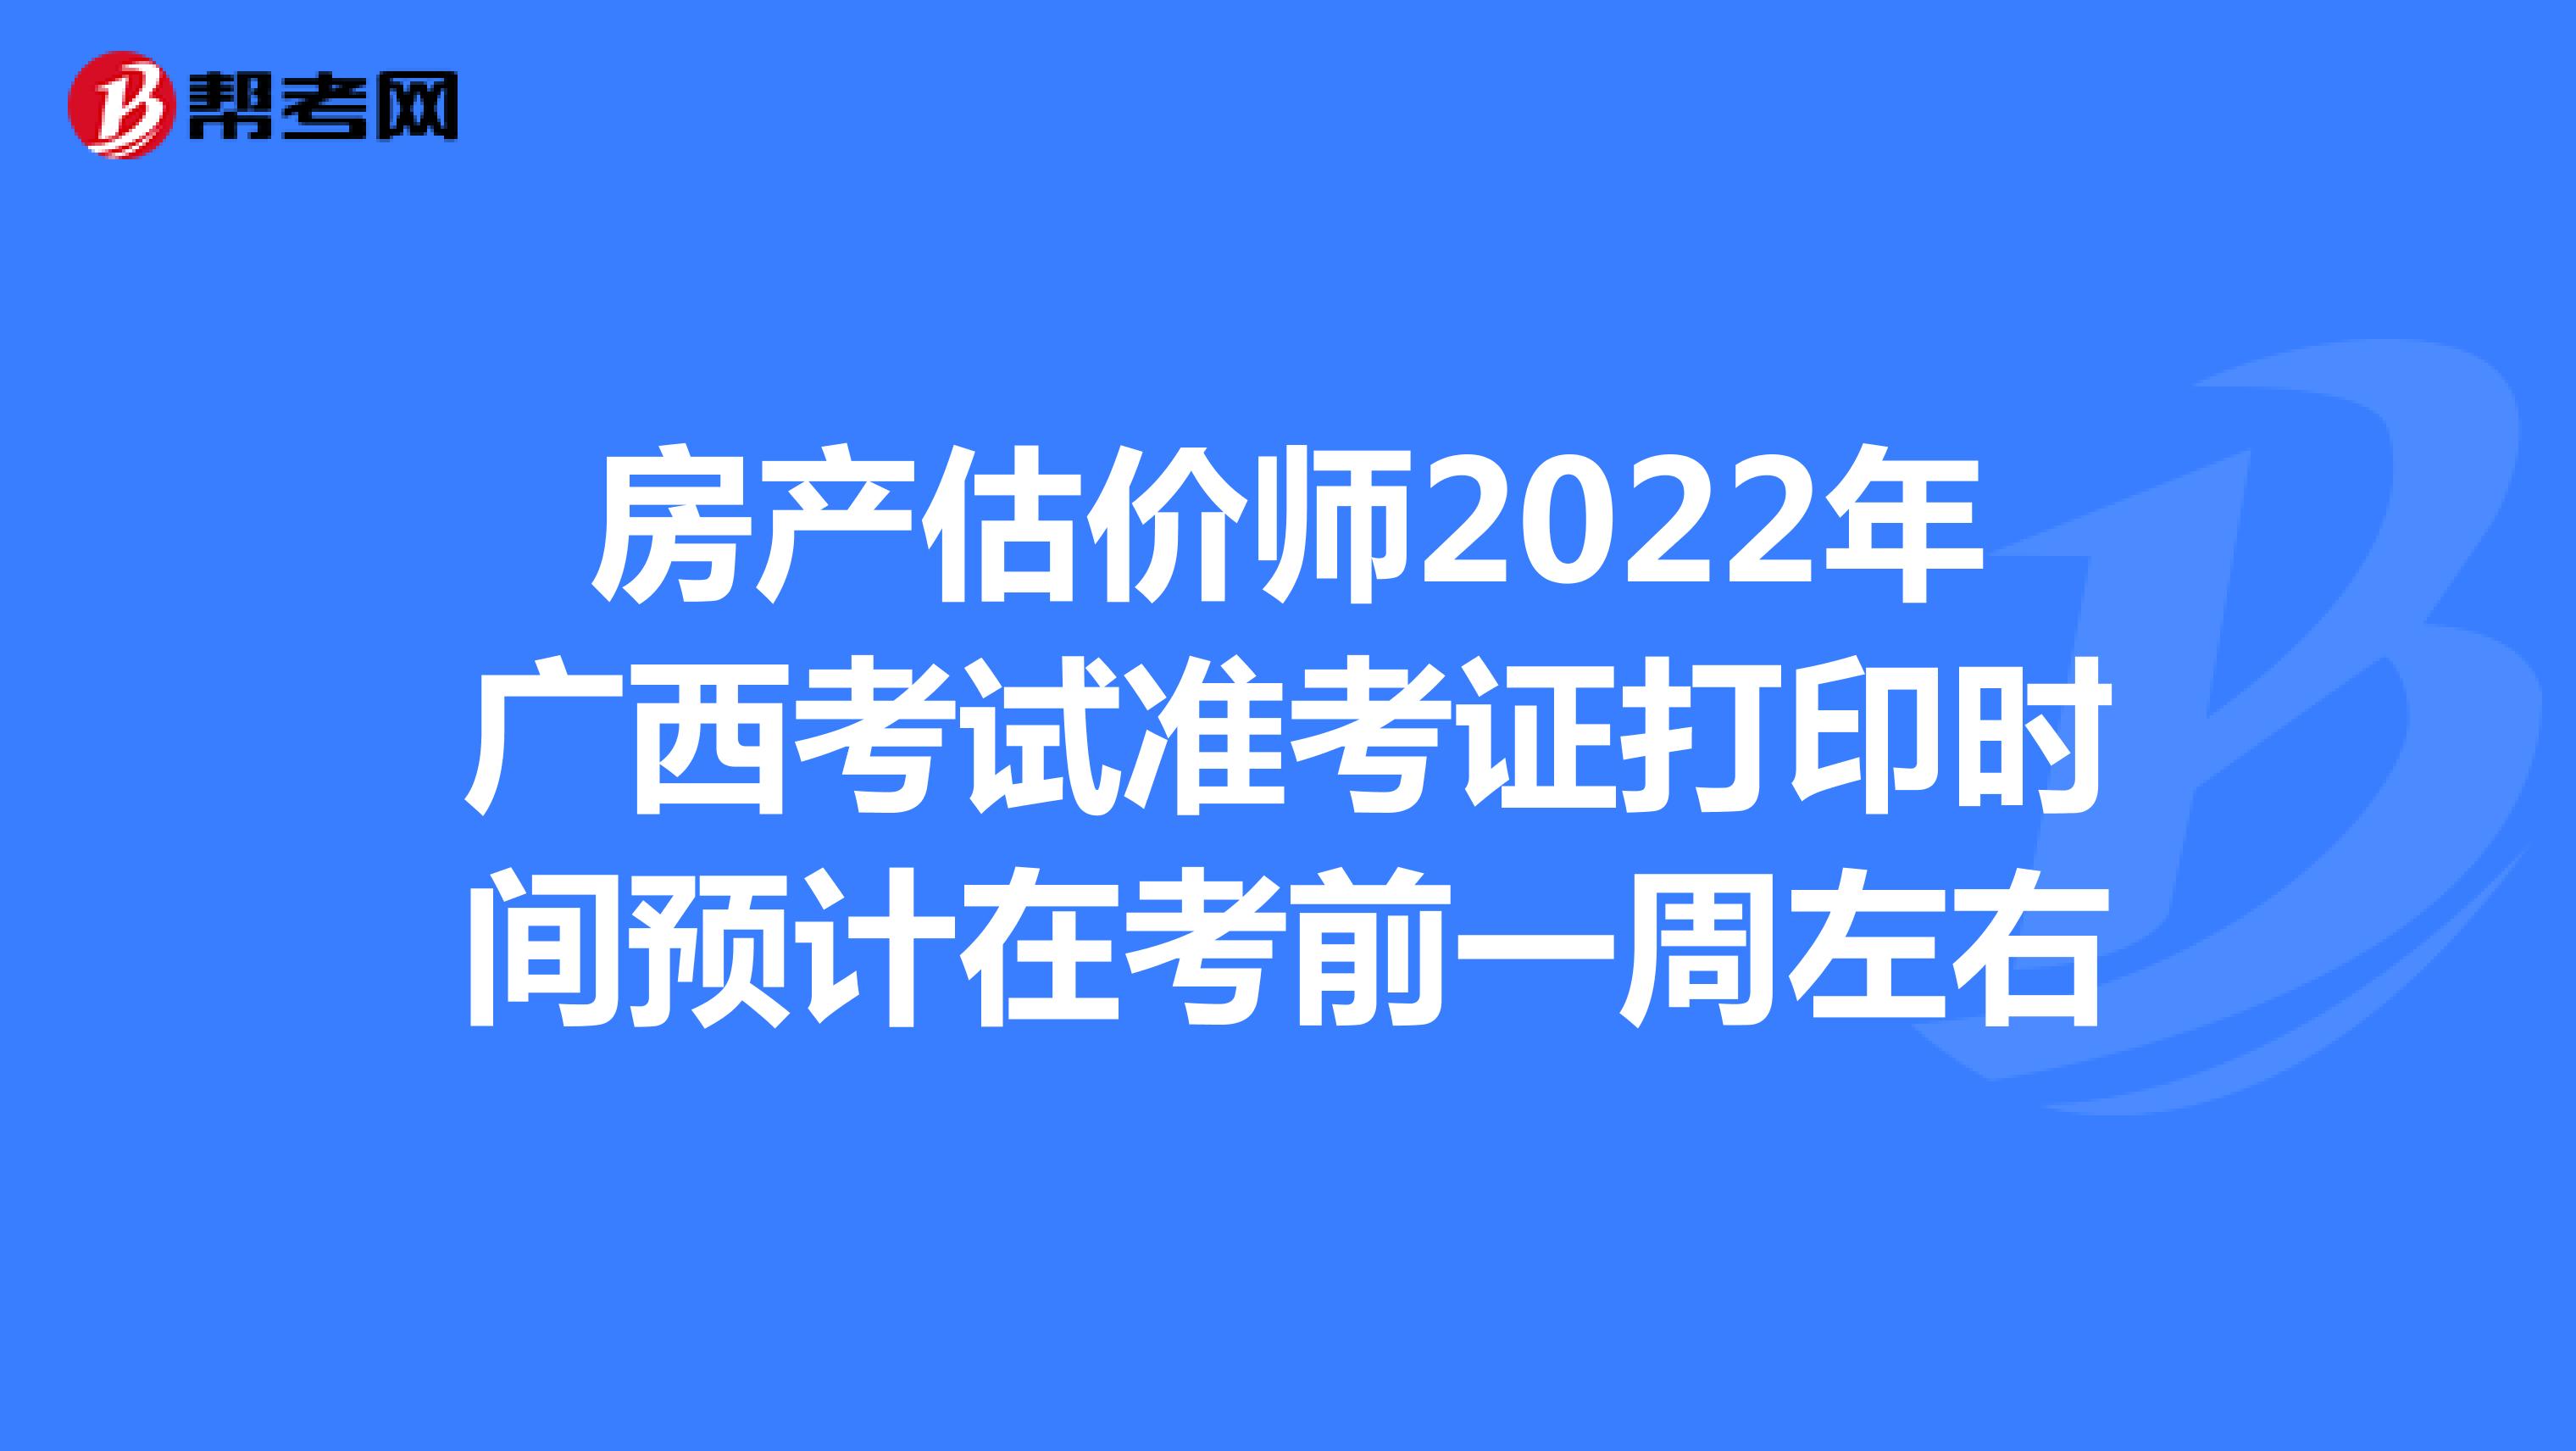 房产估价师2022年广西考试准考证打印时间预计在考前一周左右